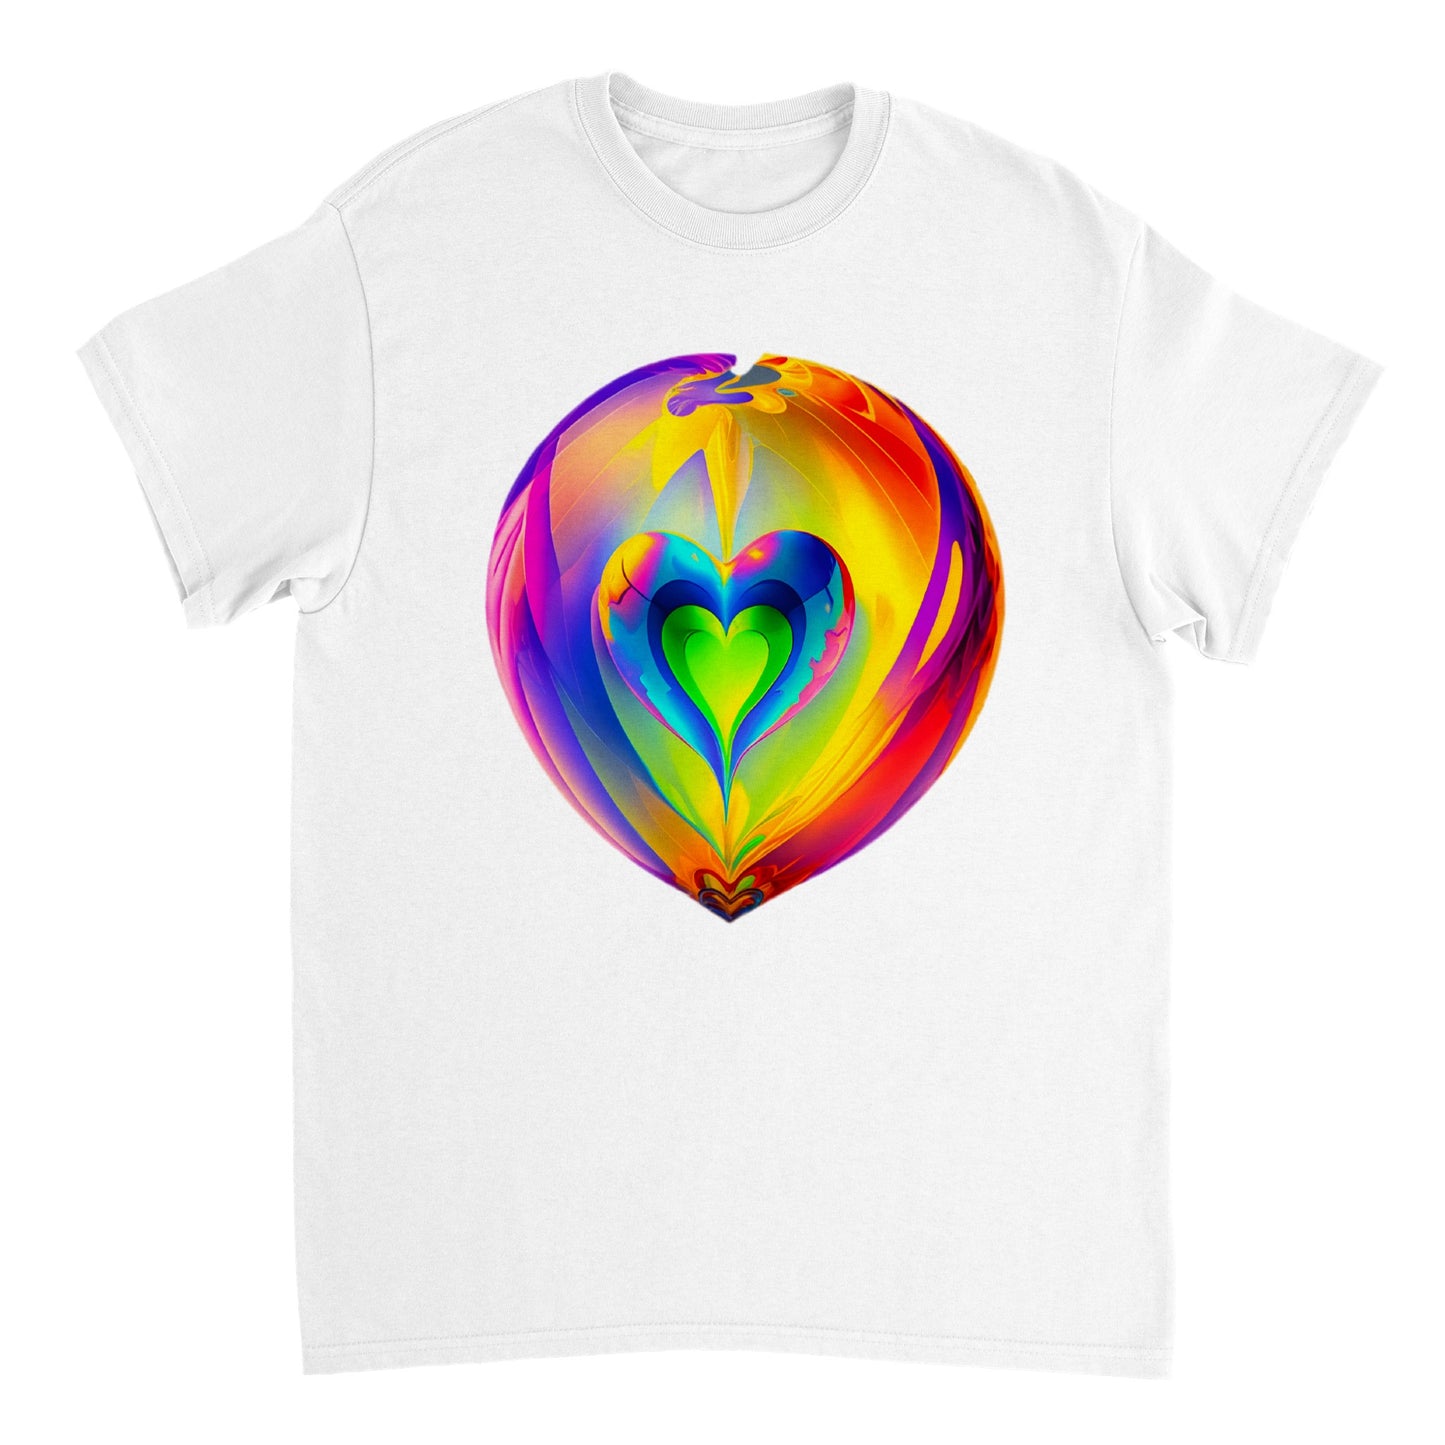 Love Heart - Heavyweight Unisex Crewneck T-shirt 101